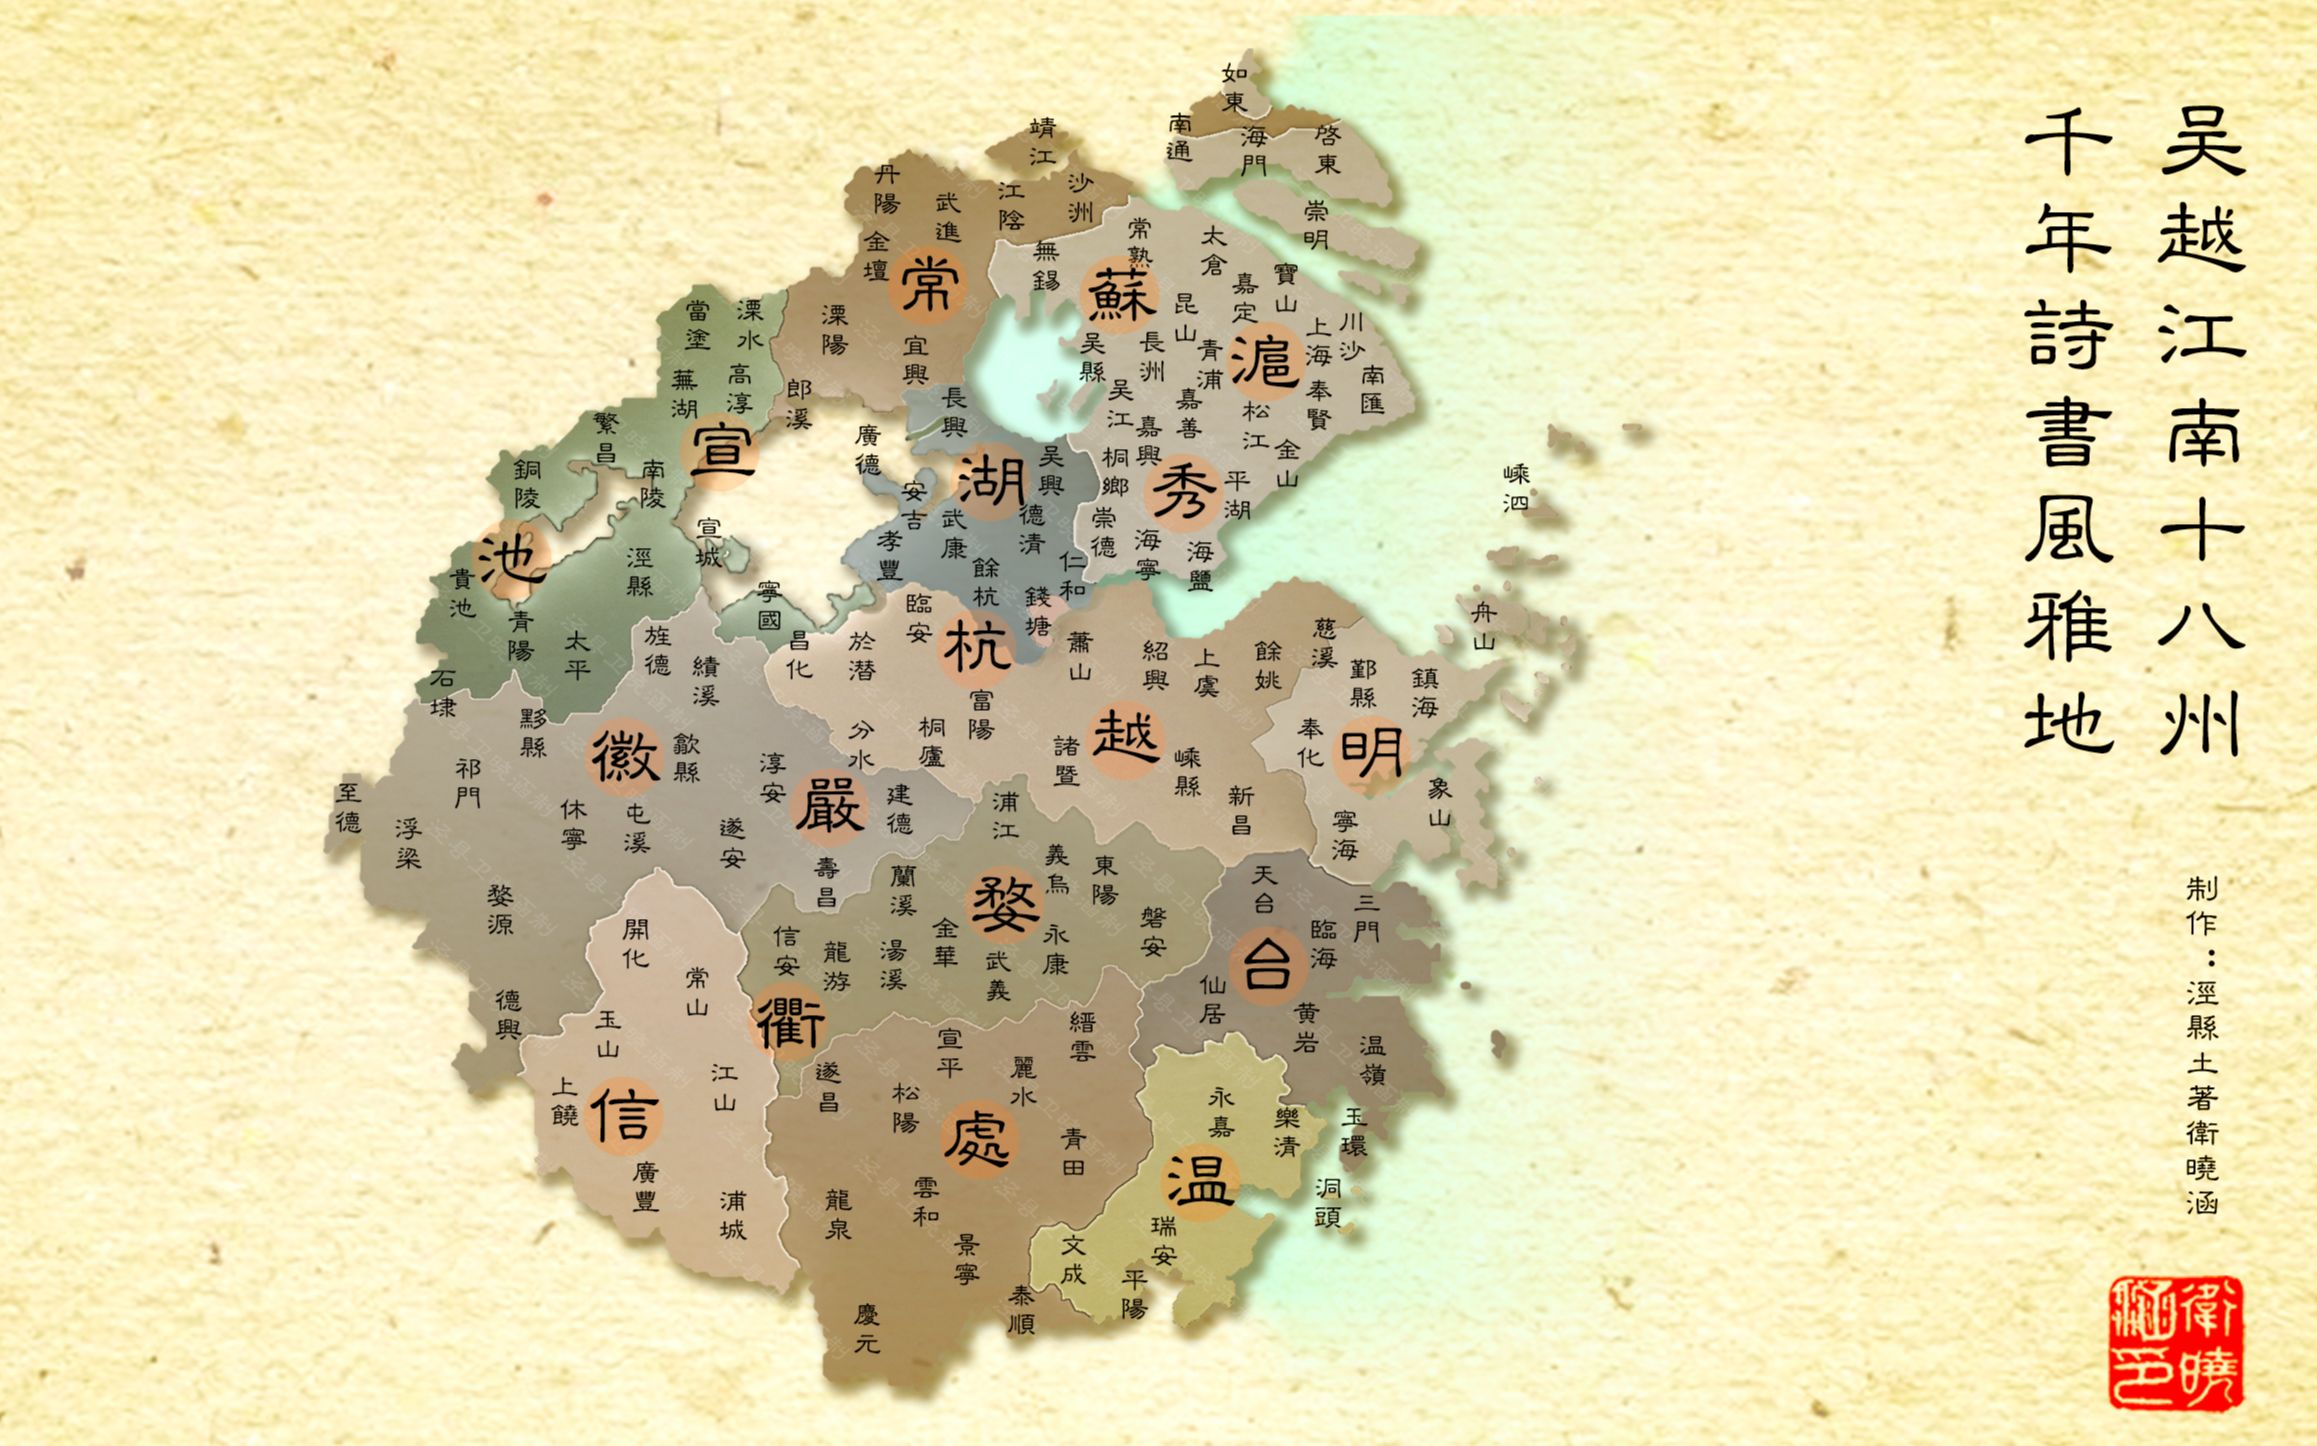 吳語使用地區，其中通東話位於右上角毗陵片